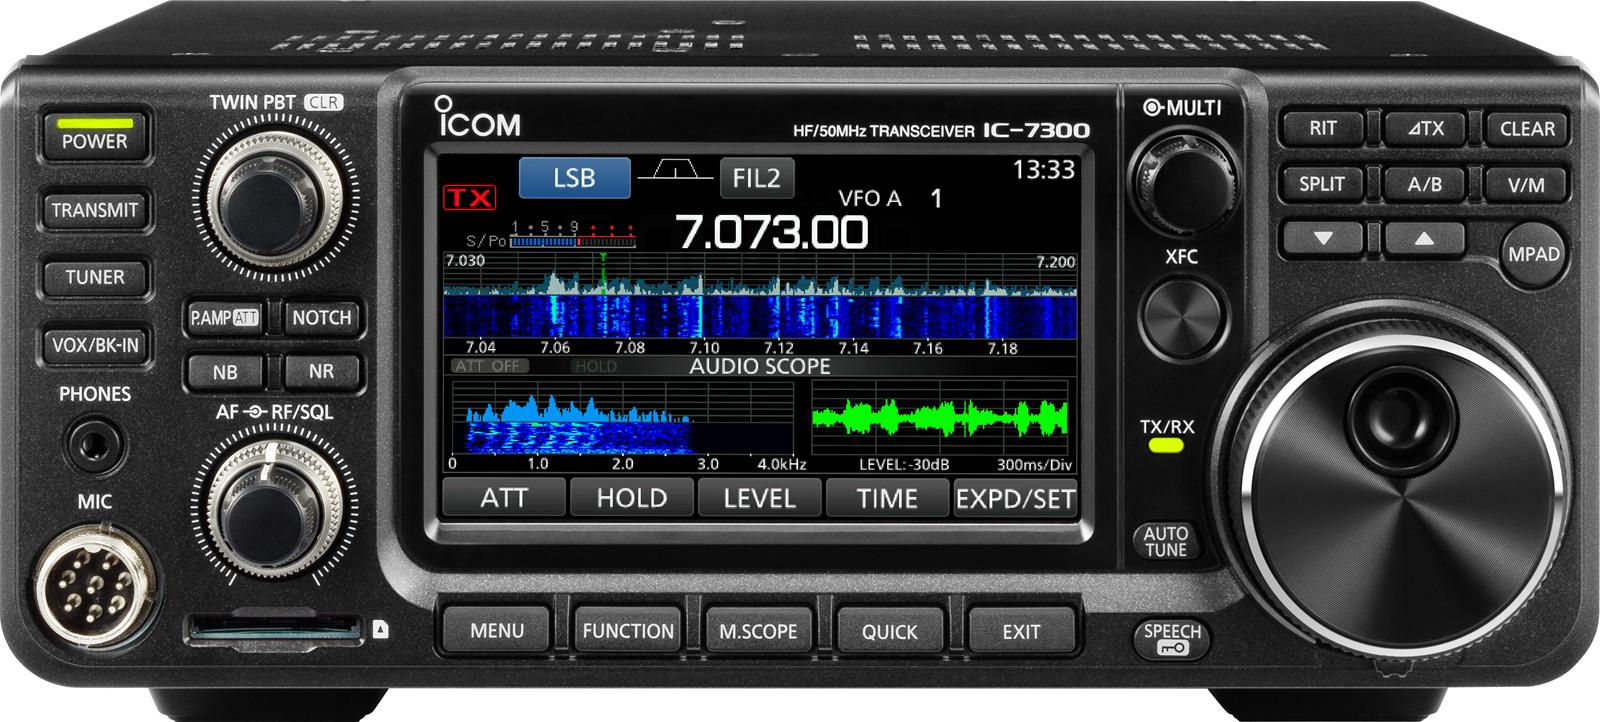 Icom IC 7300 image front